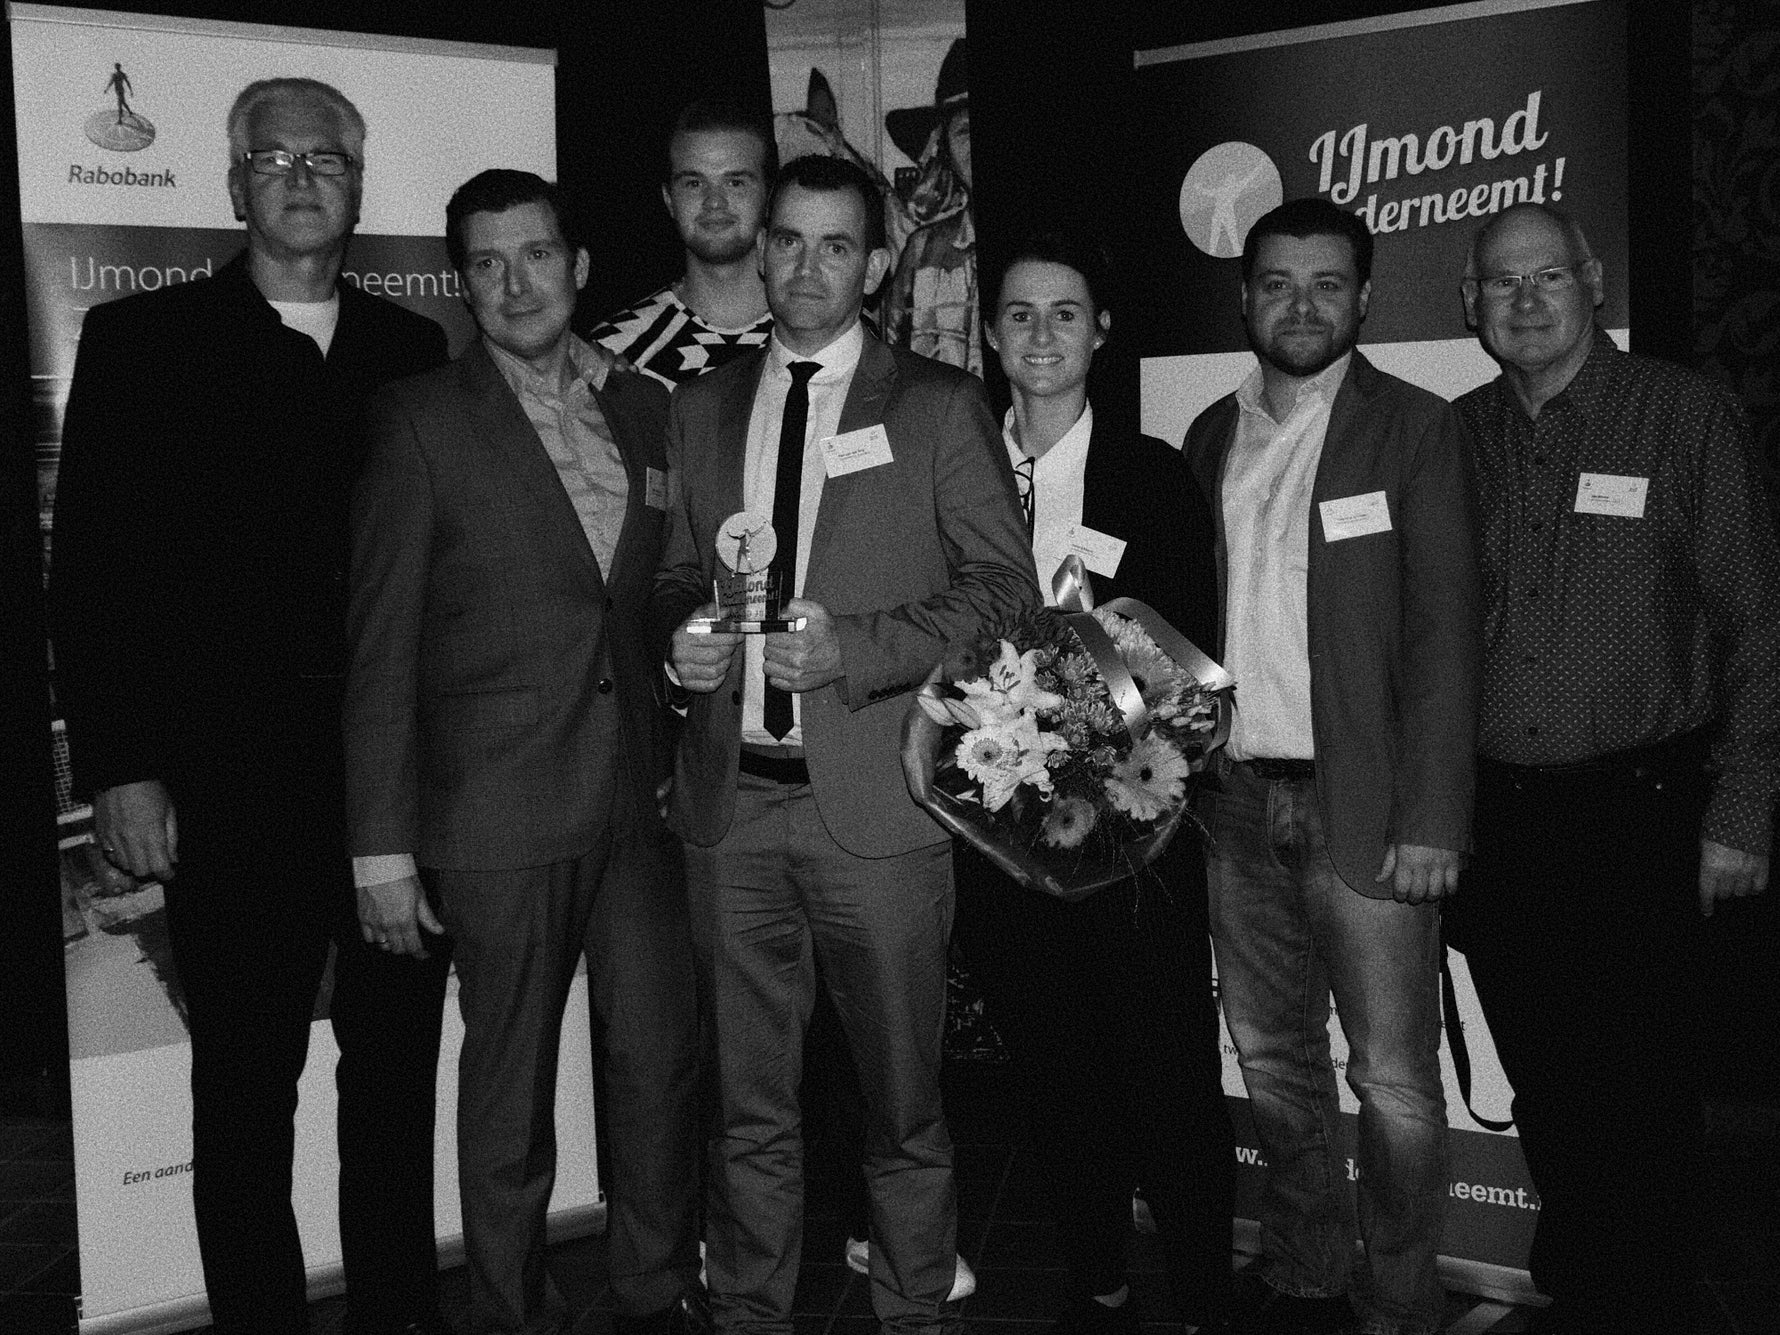 Oud eigenaren van Bamboo Import: Pim van der Eng, Sandra Bonne en Stephane Schroder winnen ijmond onderneemt Award